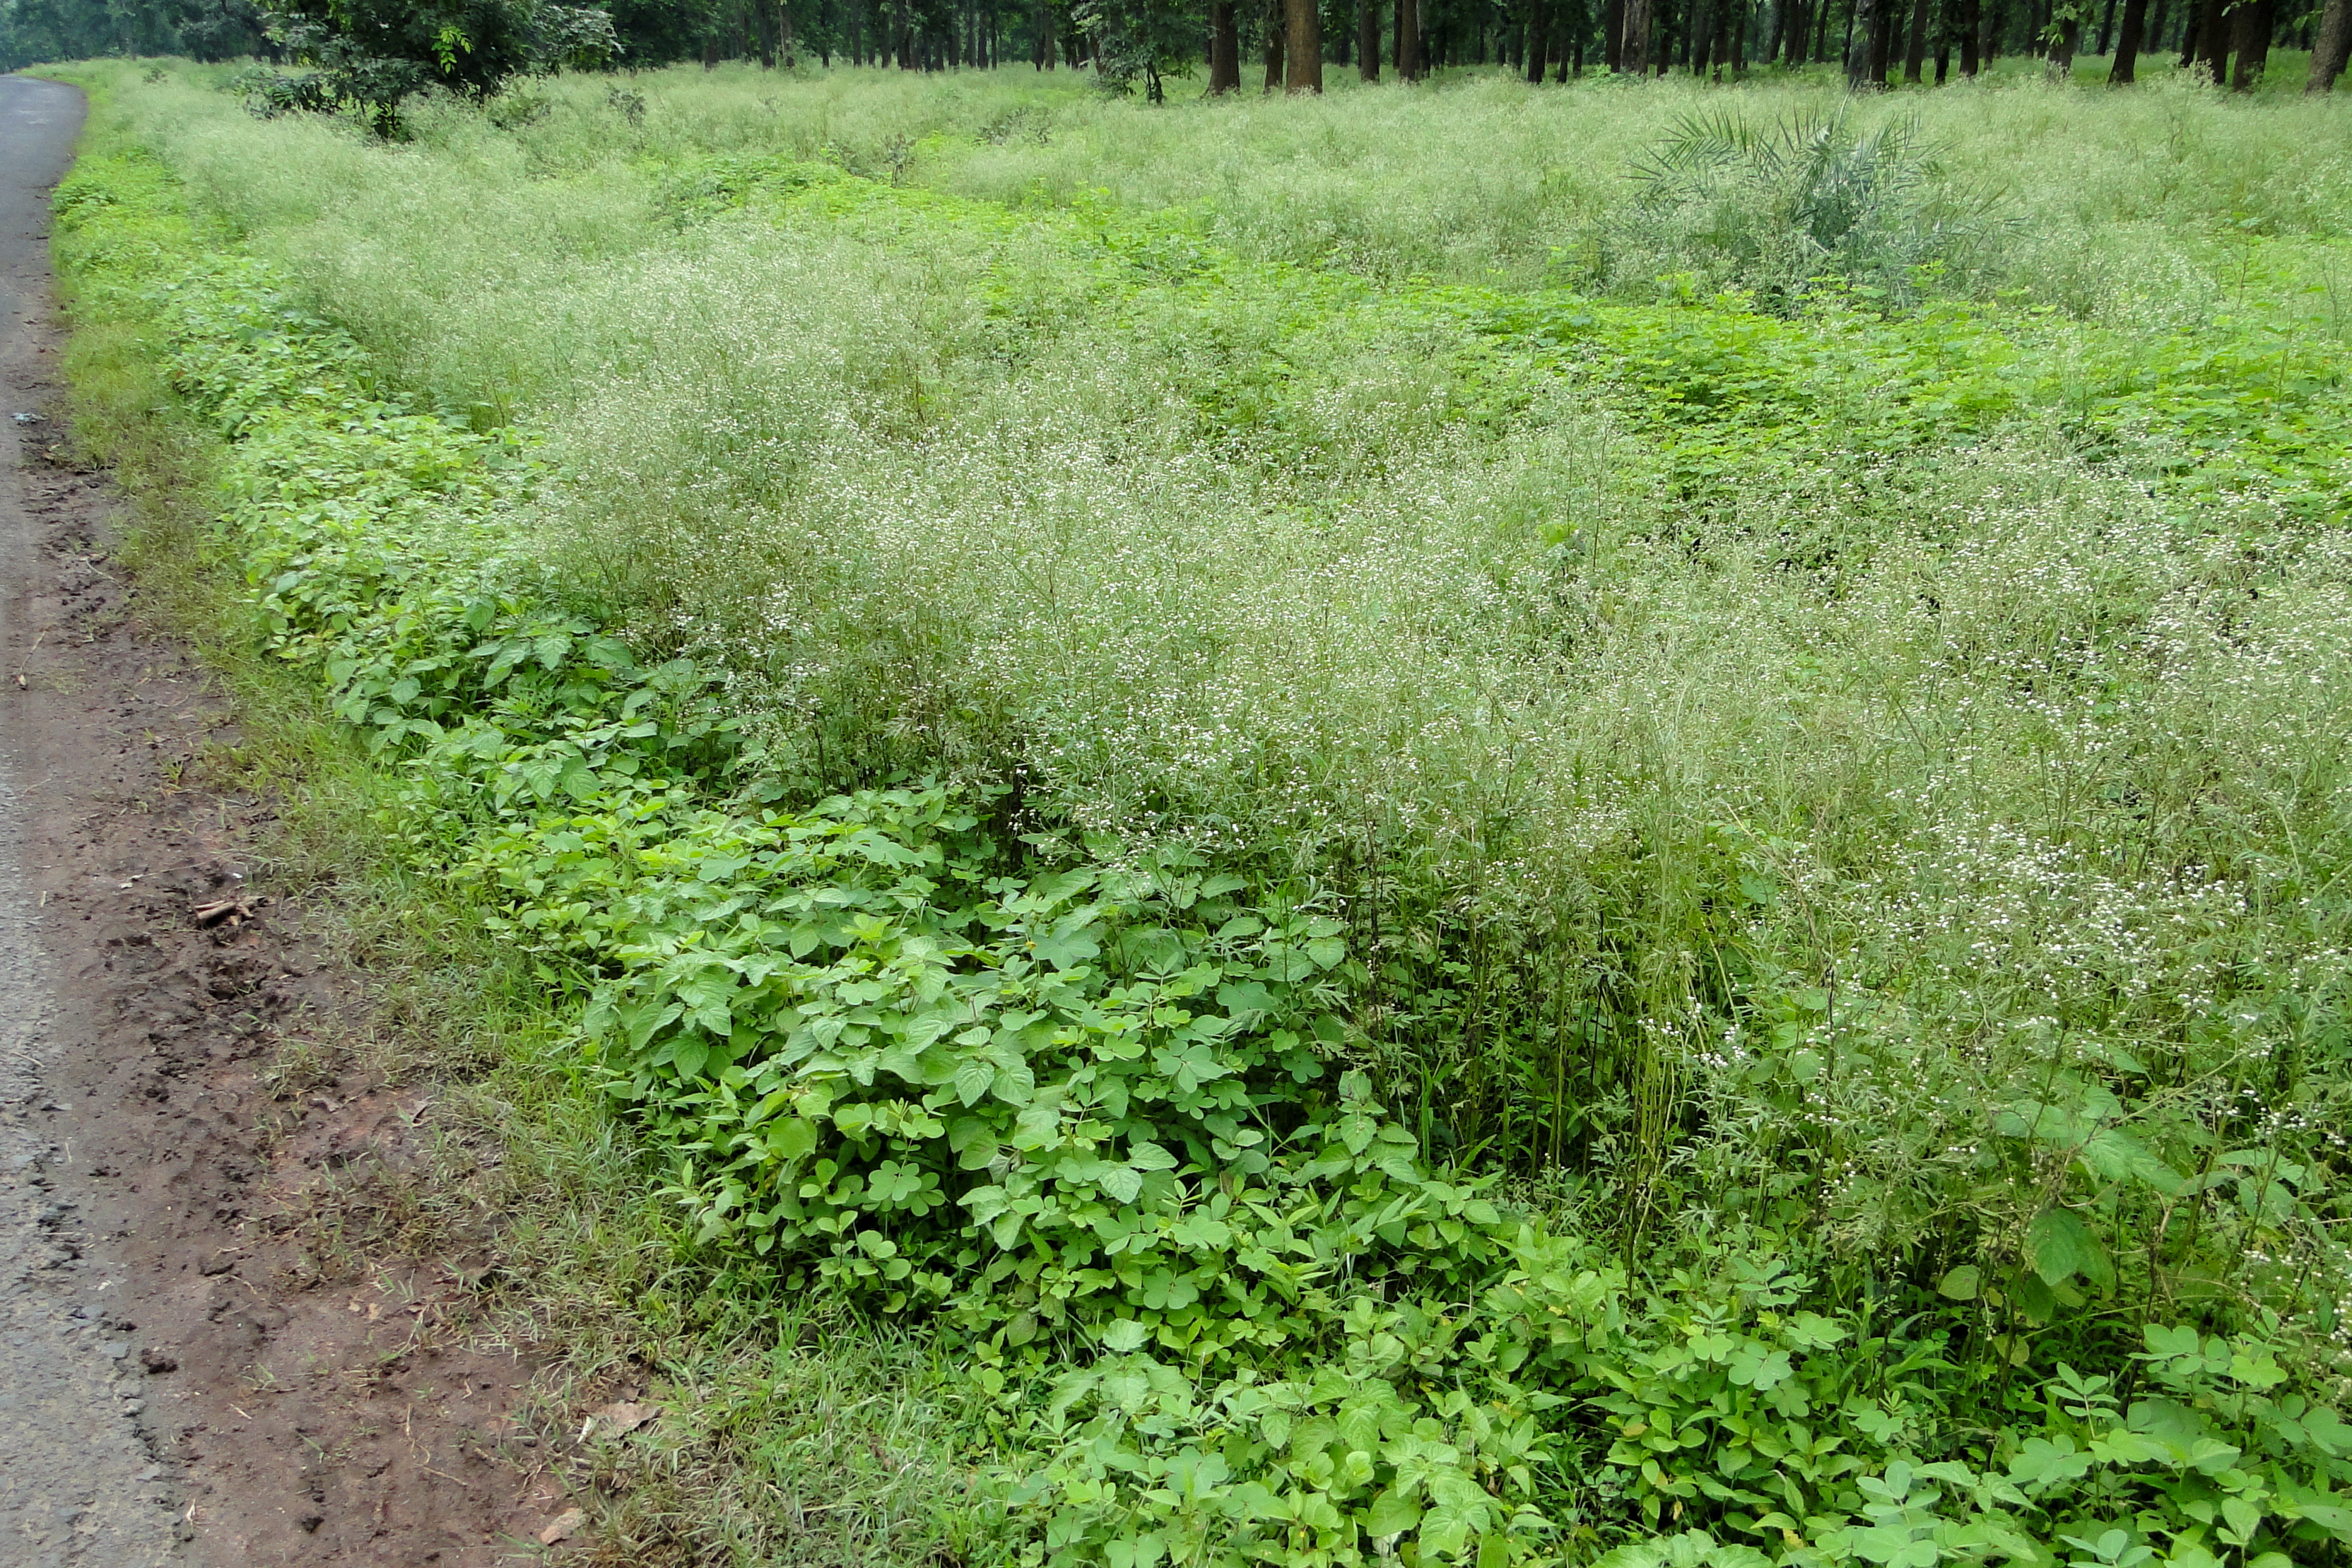 Parthenium hysterophorus (parthenium weed); Invasive habit. Achanakmar Tiger Reserve, Bilaspur, Chhattisgarh, India. August 2012.